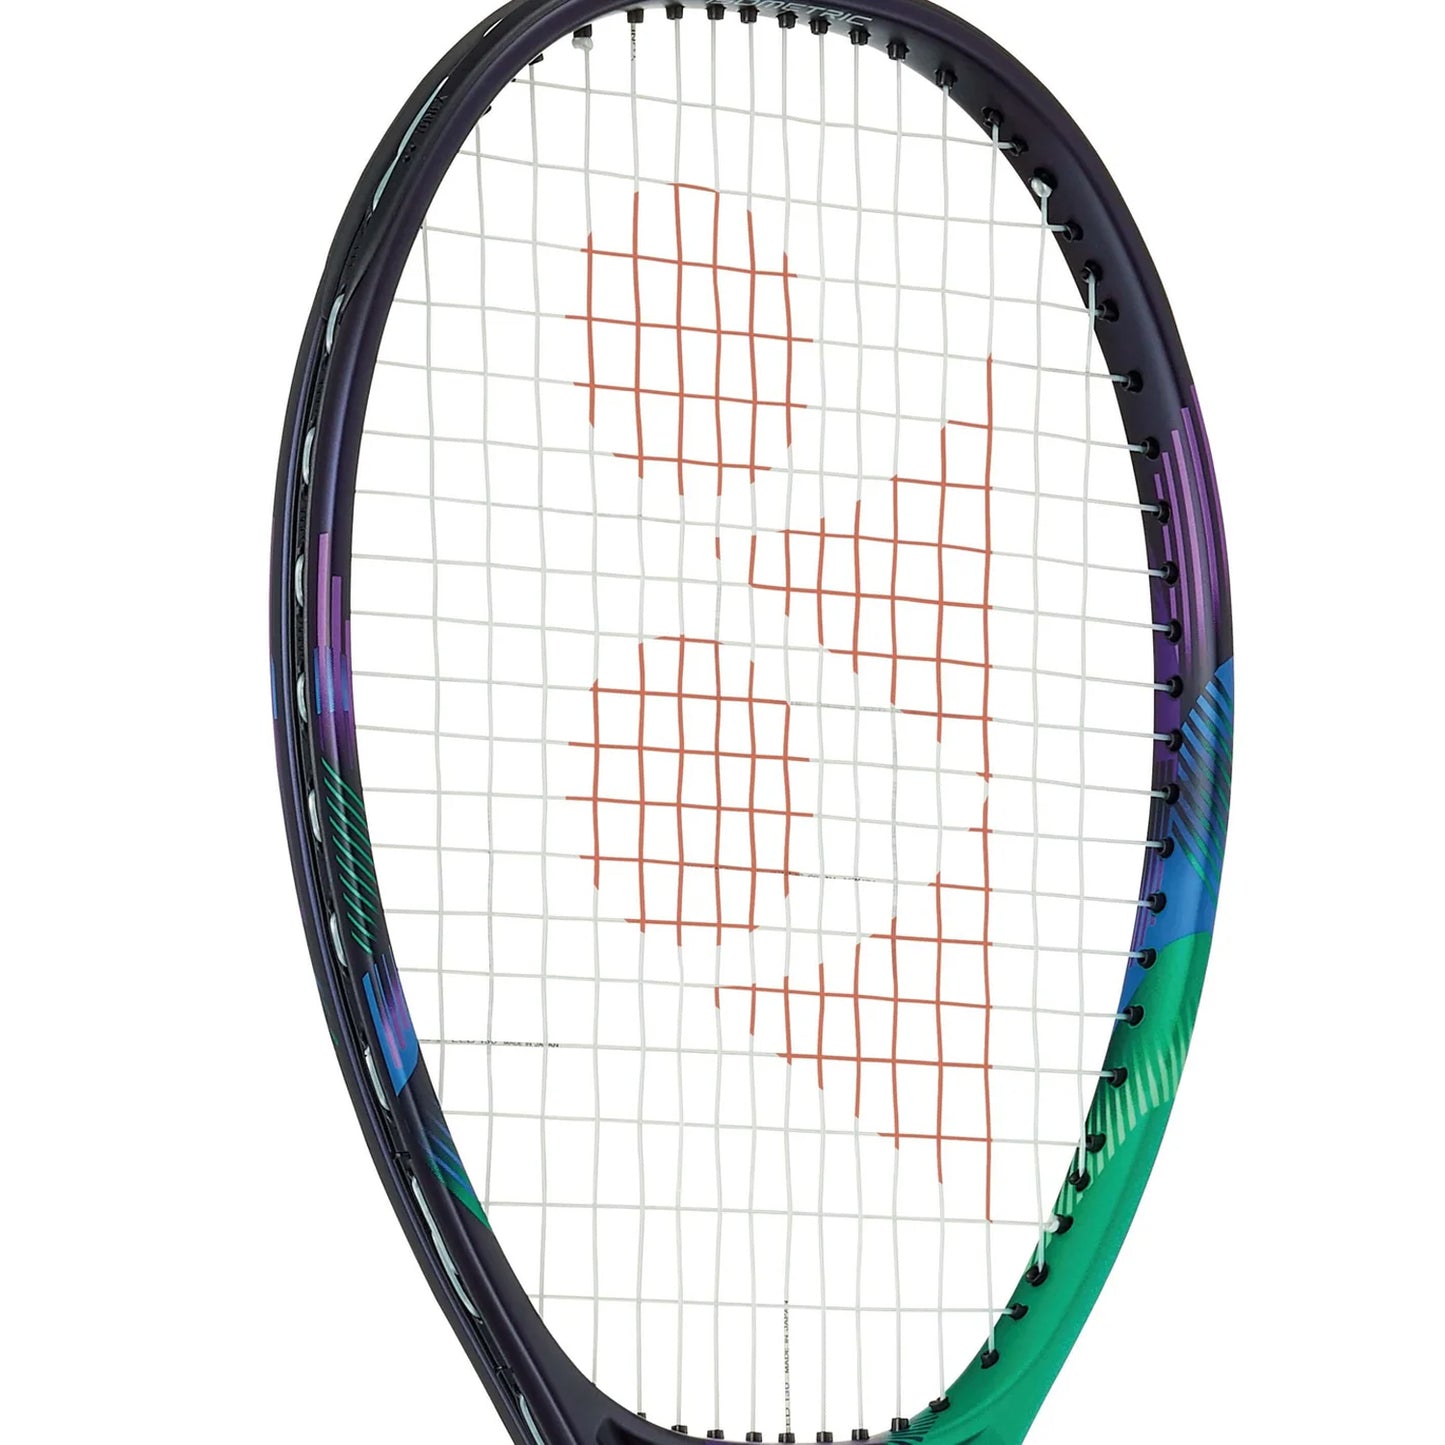 Yonex VCore Pro100 Unstrung Tennis Racquet,300Grams - Best Price online Prokicksports.com